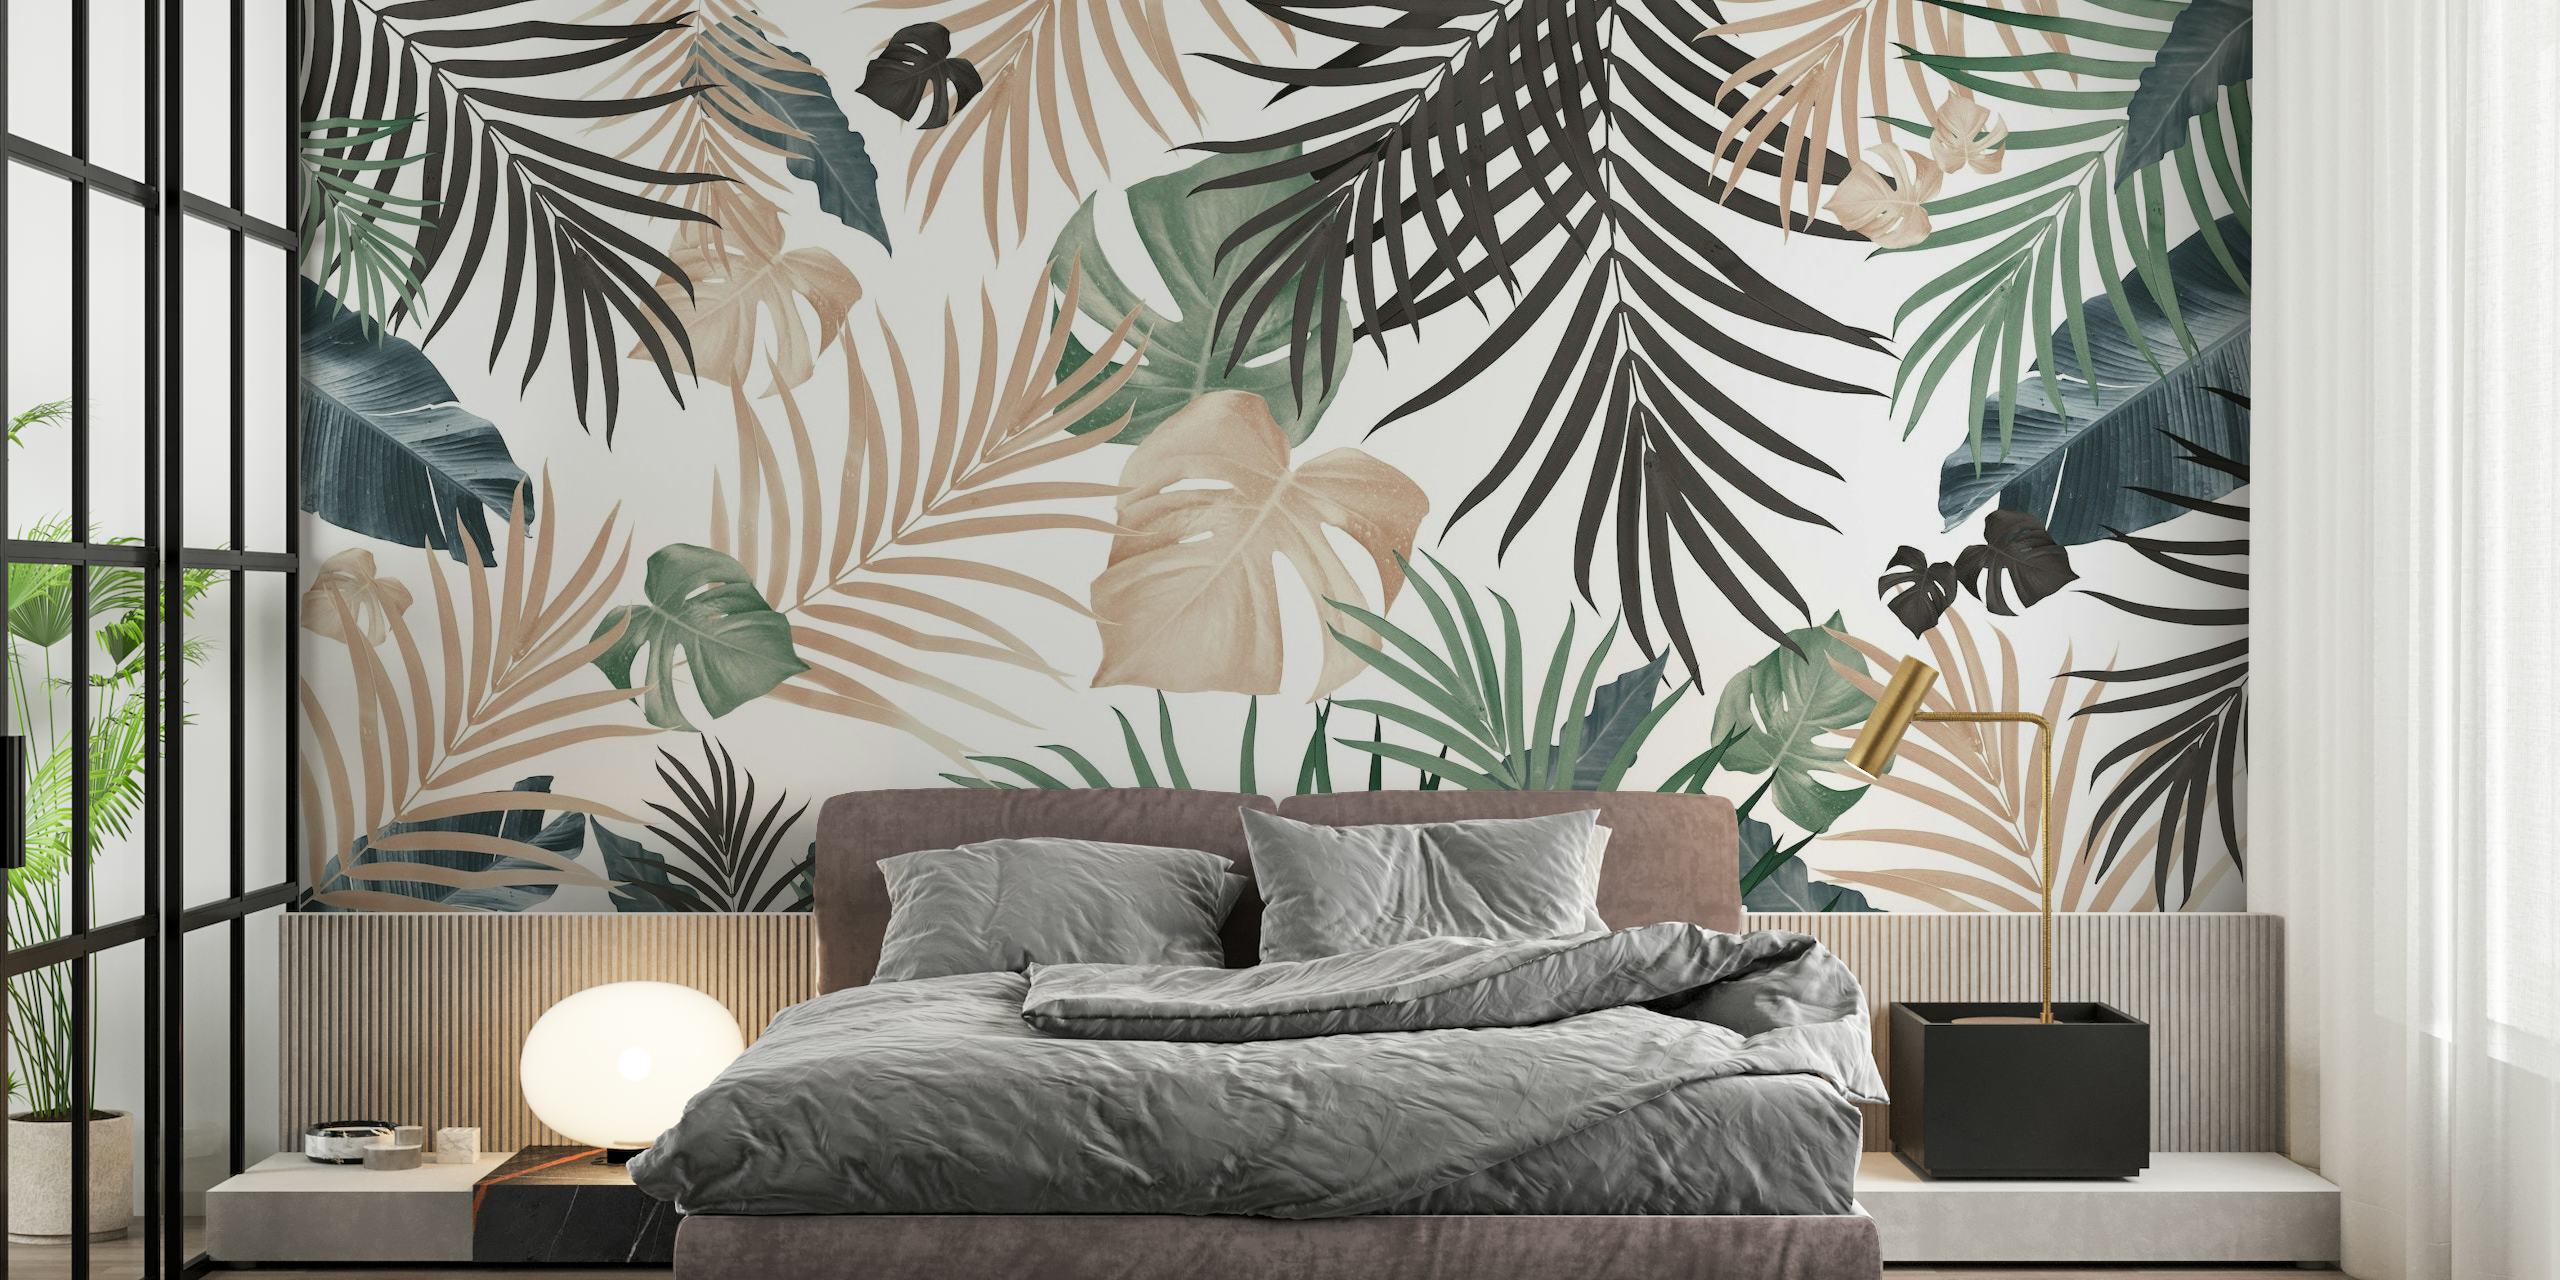 Artistieke tropische bladeren muurschildering met een zacht kleurenpalet